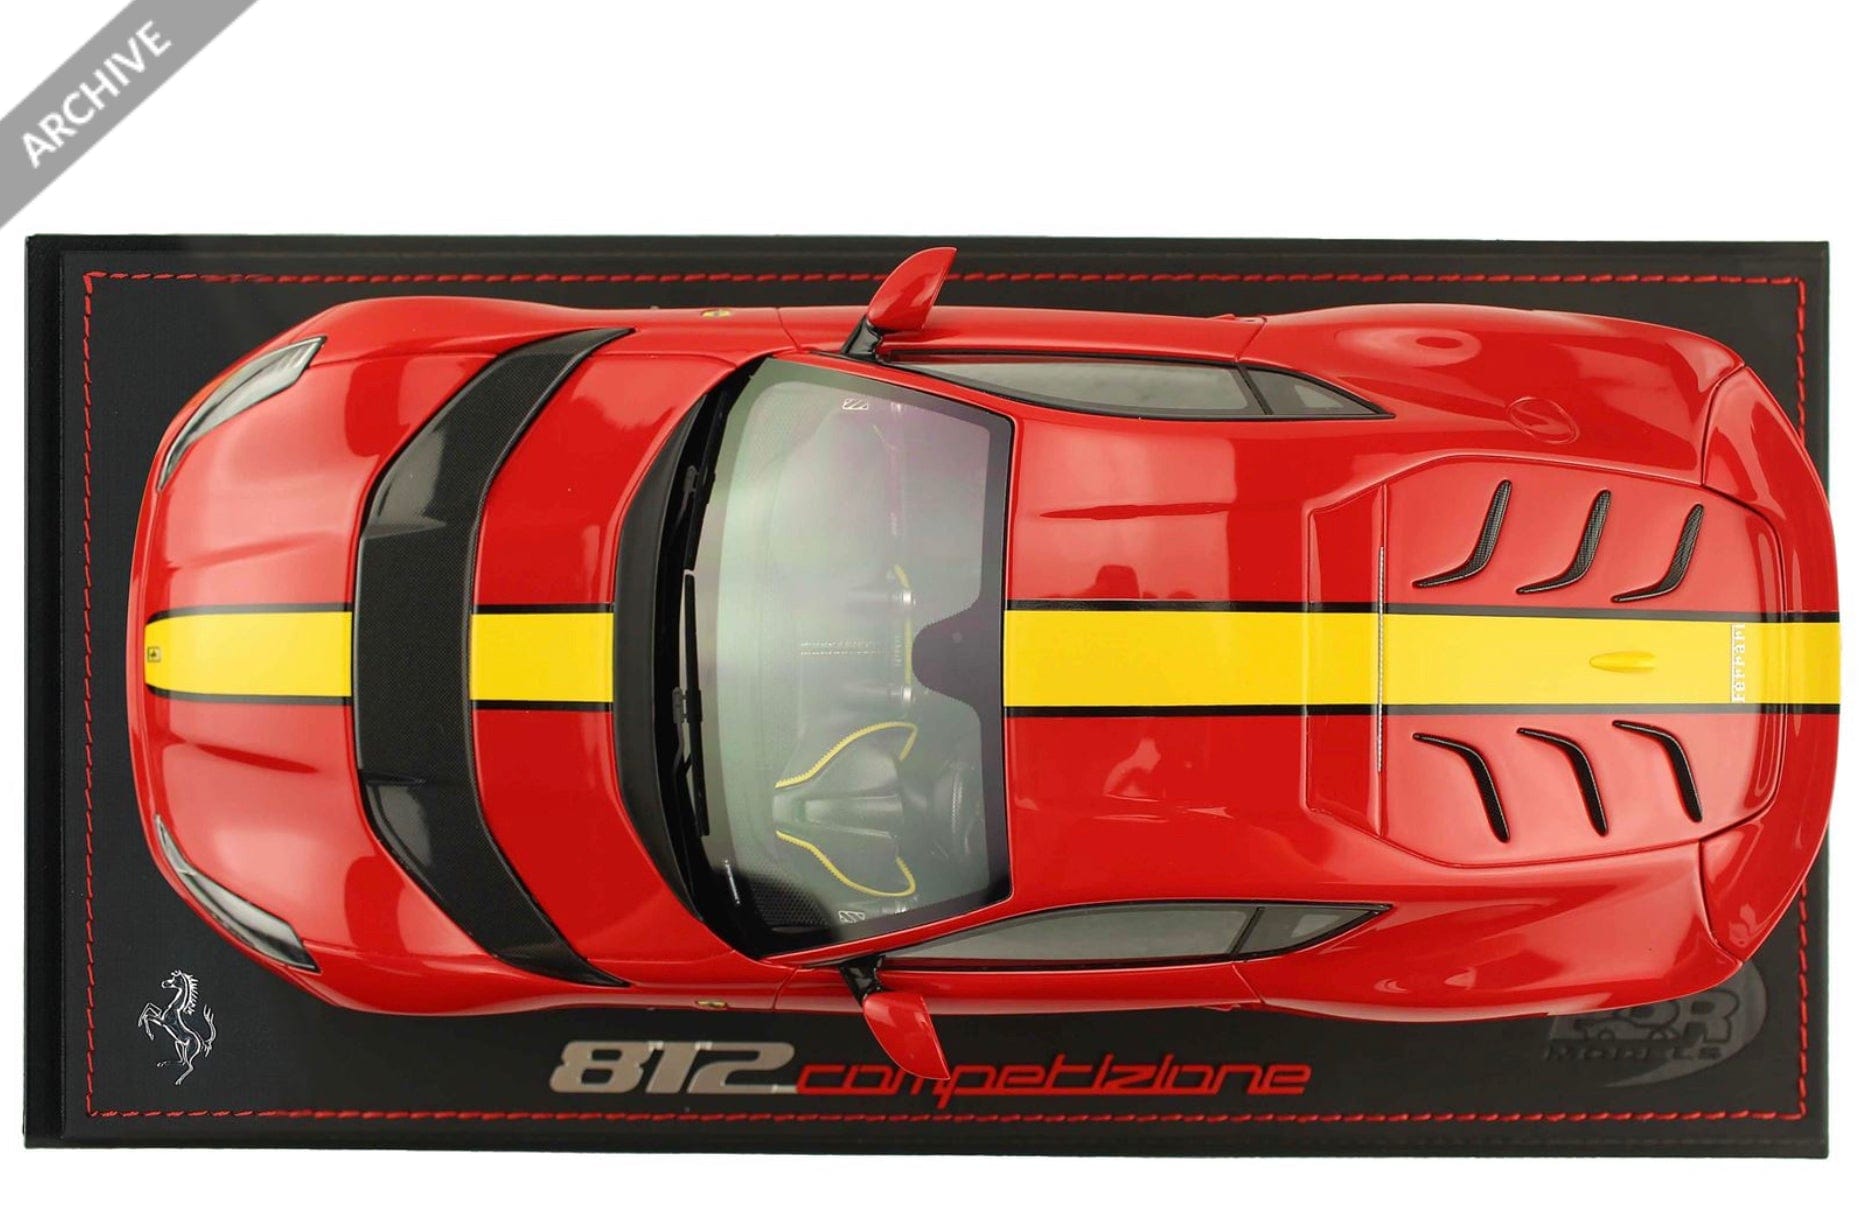 BBRFerrari 812 Competizione 2021 Rosso Corsa 322 With Racing Giallo FLY Stripe